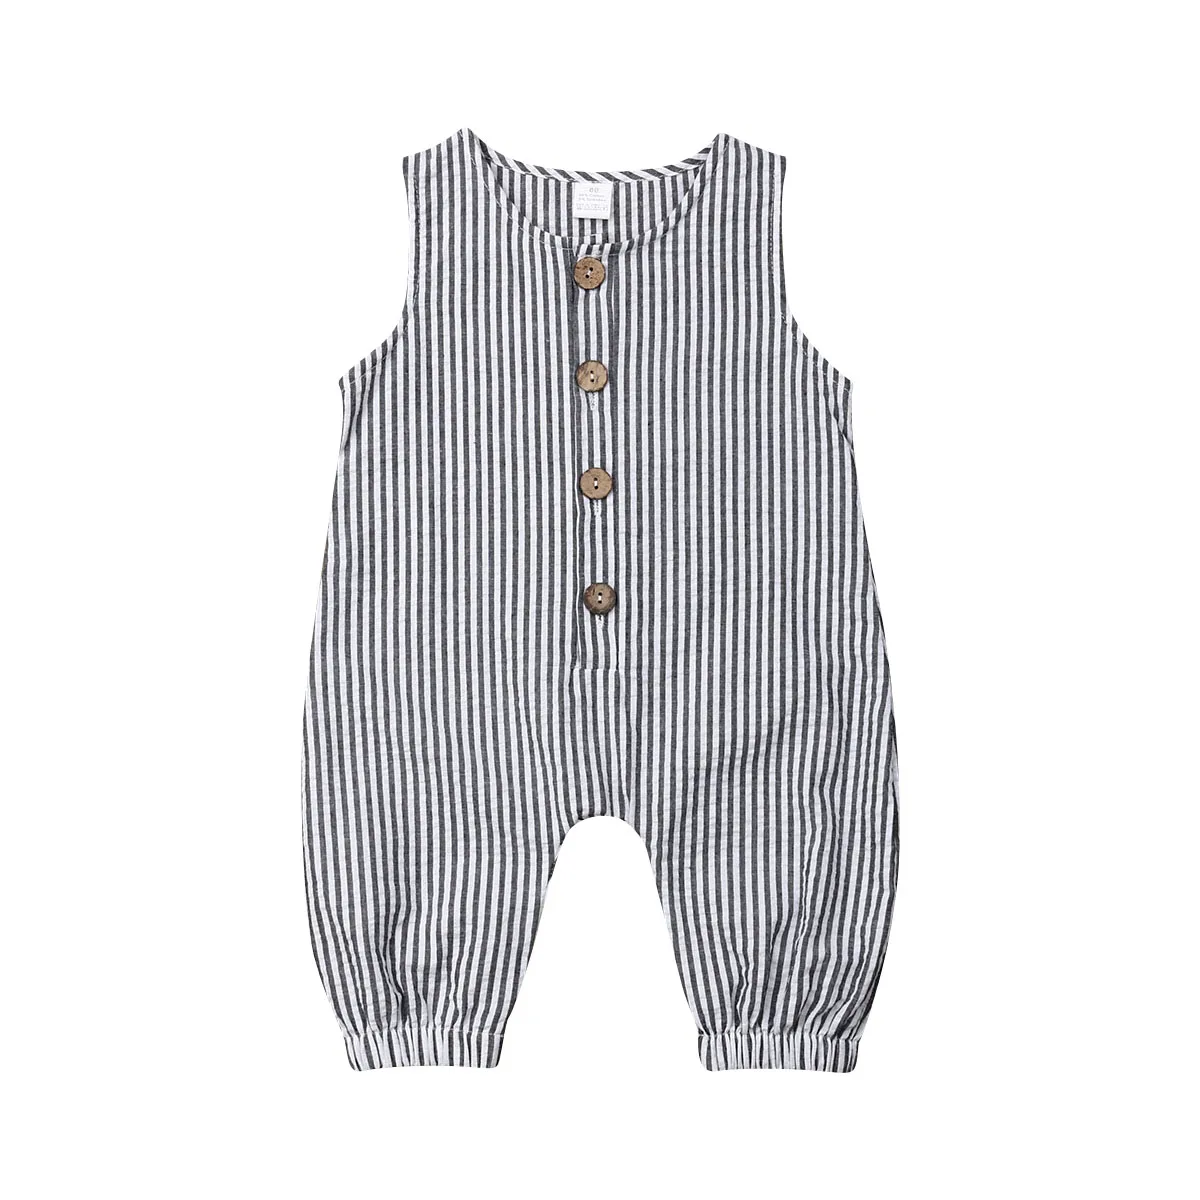 Г. Летняя одежда для малышей хлопковый комбинезон для новорожденных мальчиков и девочек, комбинезон в полоску без рукавов, одежда, костюмы пляжный костюм для детей от 0 до 18 месяцев - Цвет: Серый